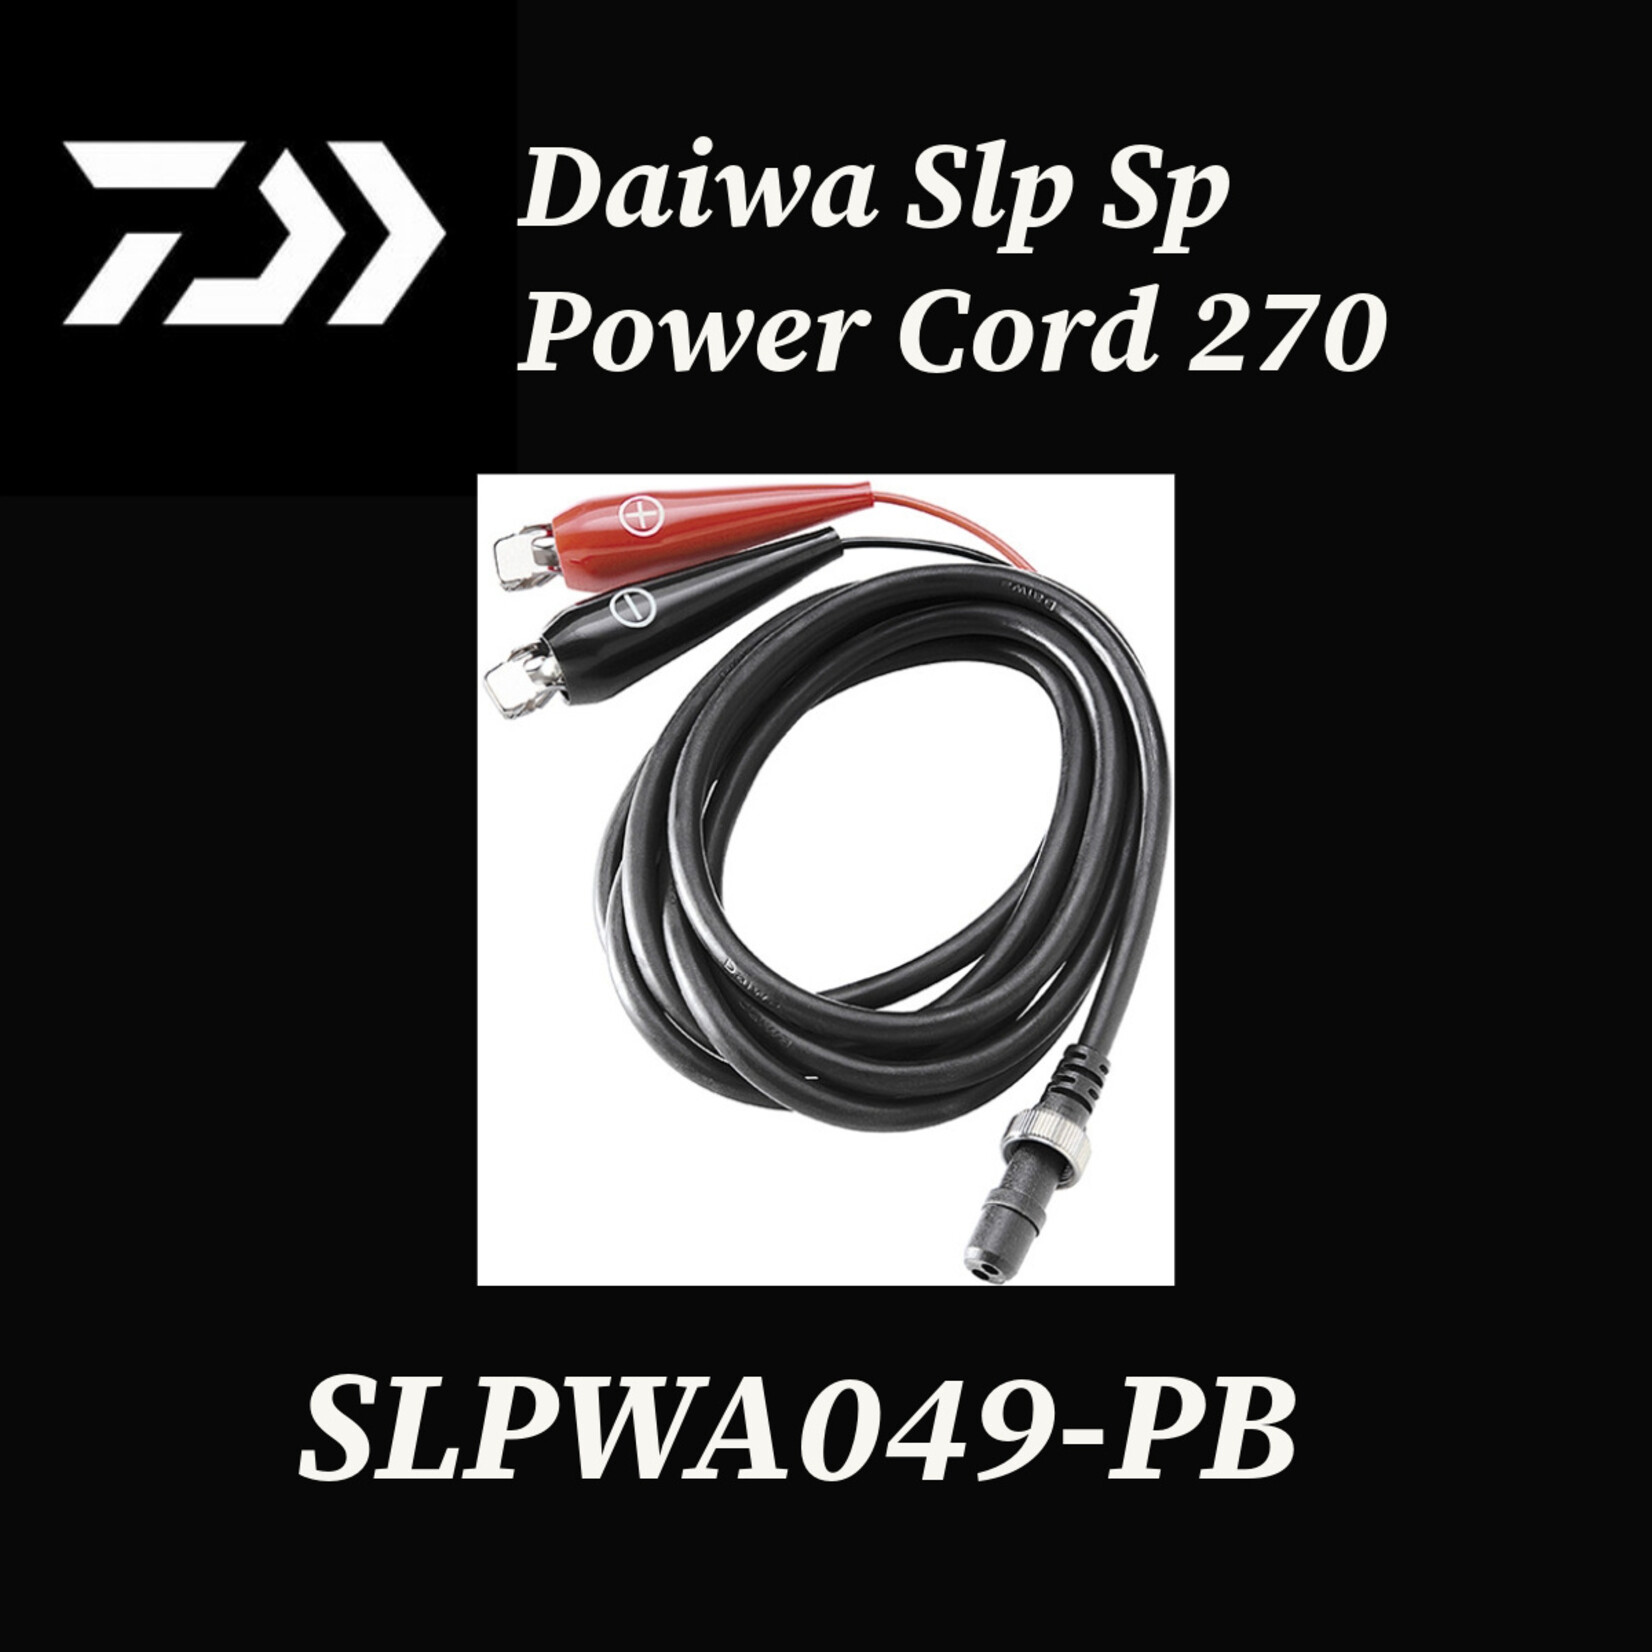 SLP SP POWER CORD 270 - SLPWA049-PB